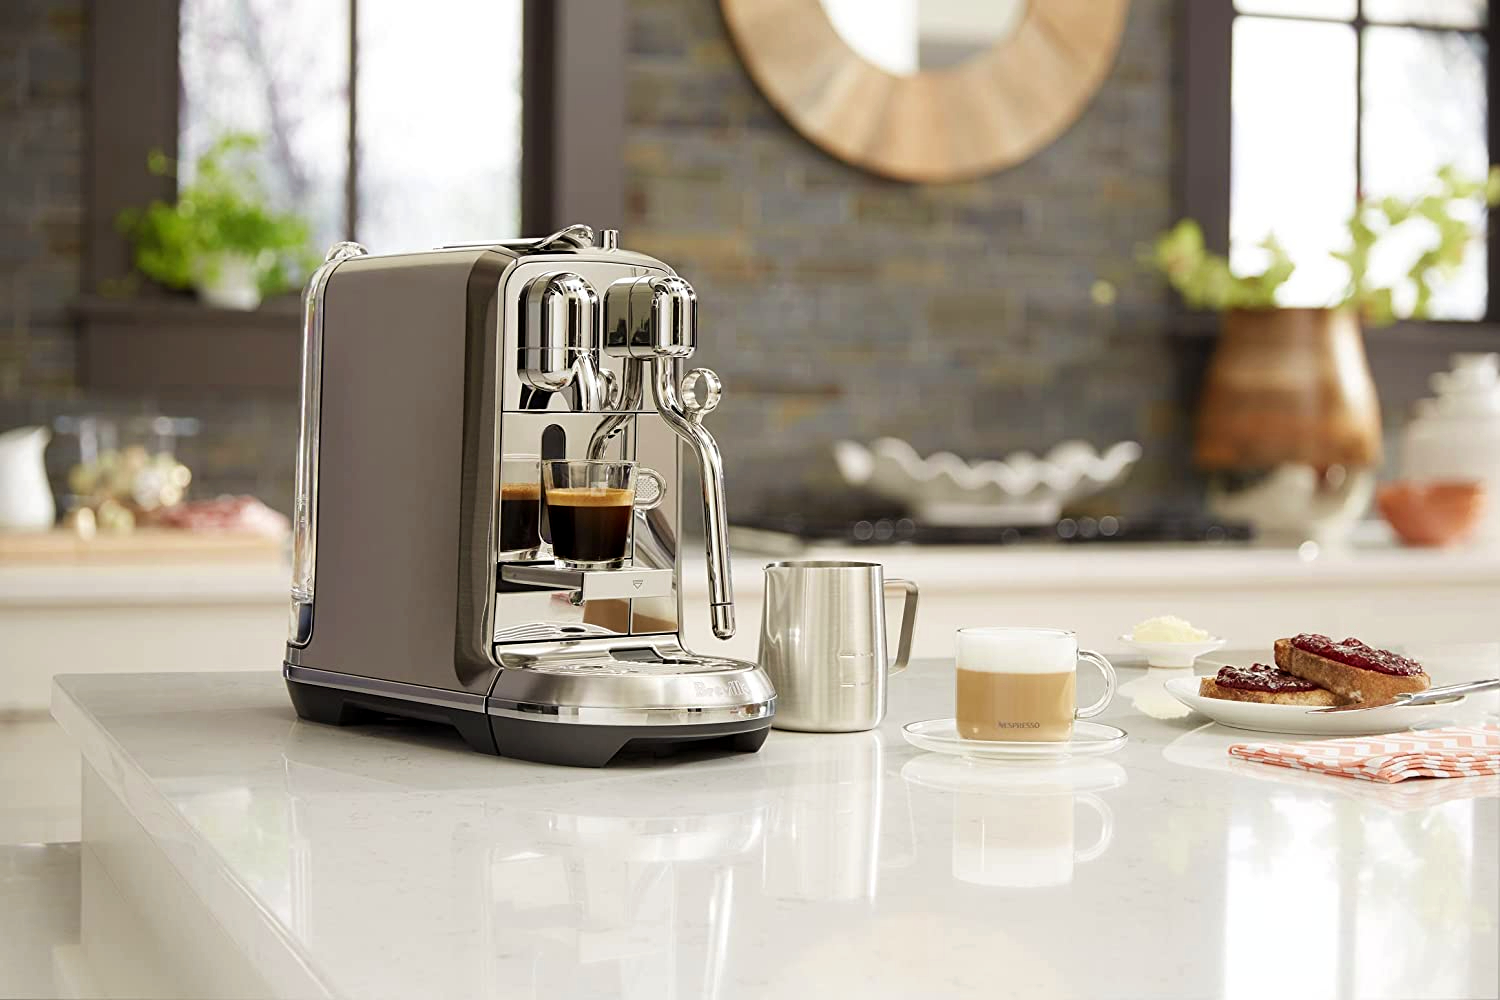 Breville, Nespresso Pixie Single-Serve Espresso Machine with